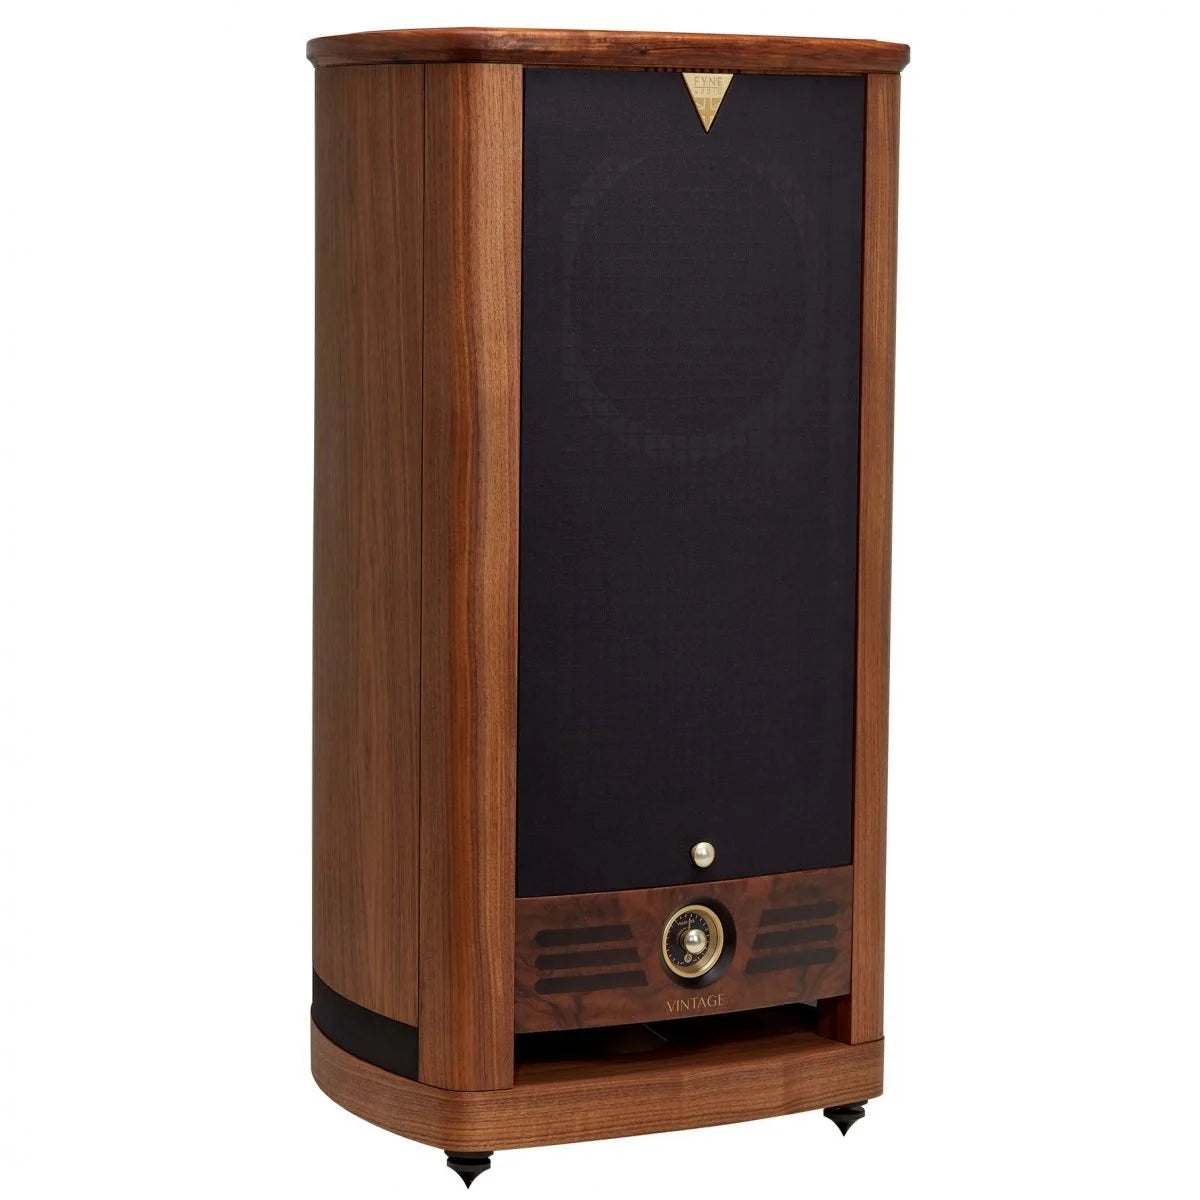 Fyne Audio Vintage Twelve Floorstanding Speaker | Hi-Fi Pair